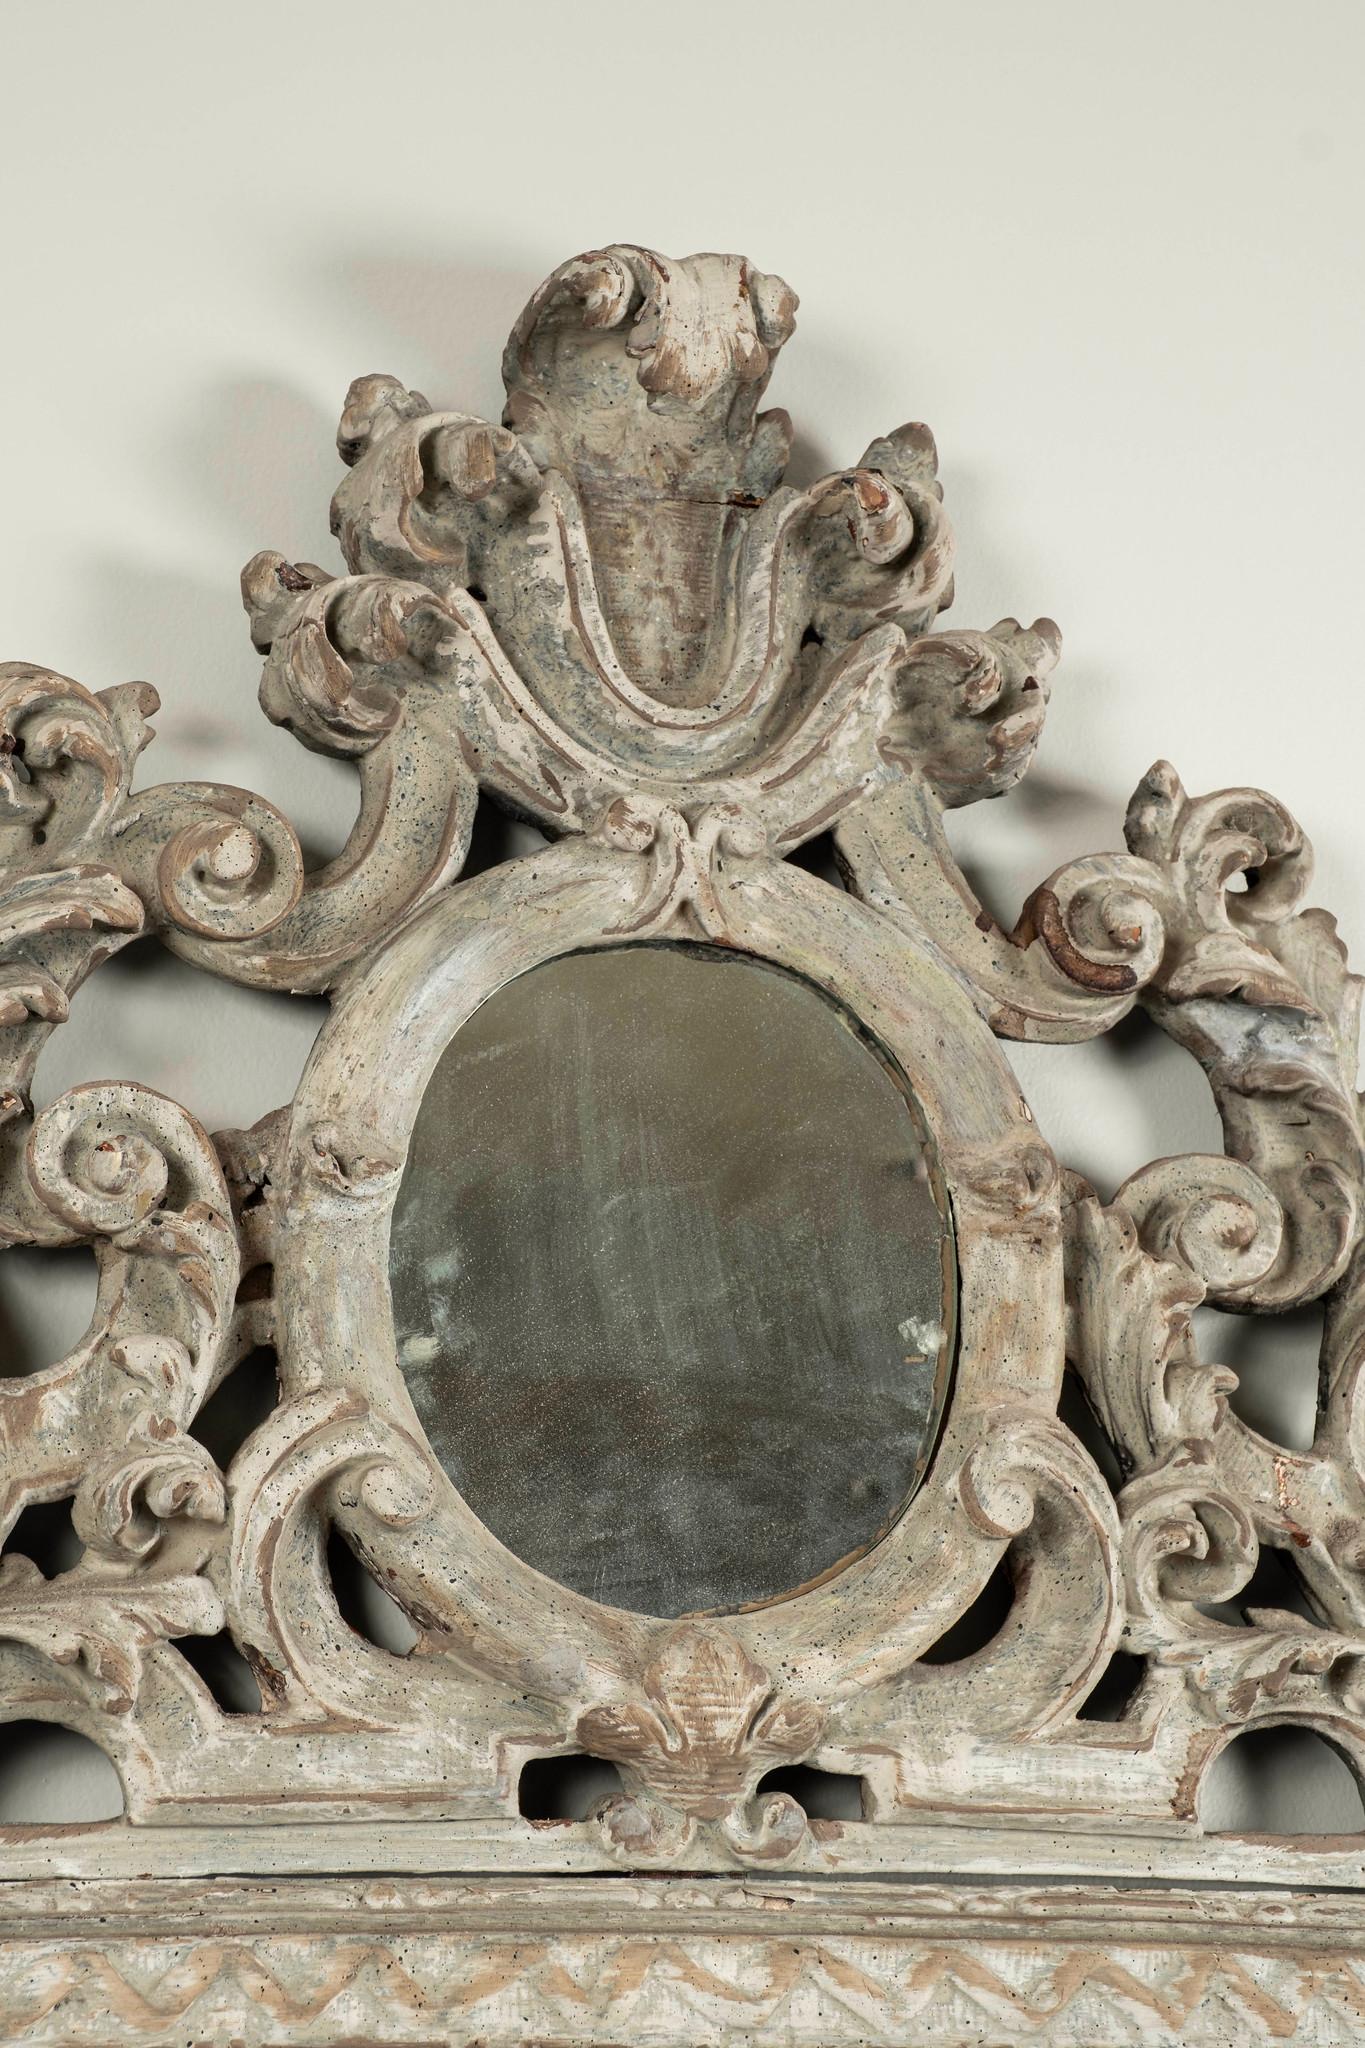 Bemalter und beschädigter Louis-XV-Spiegel aus dem 18. Jahrhundert.